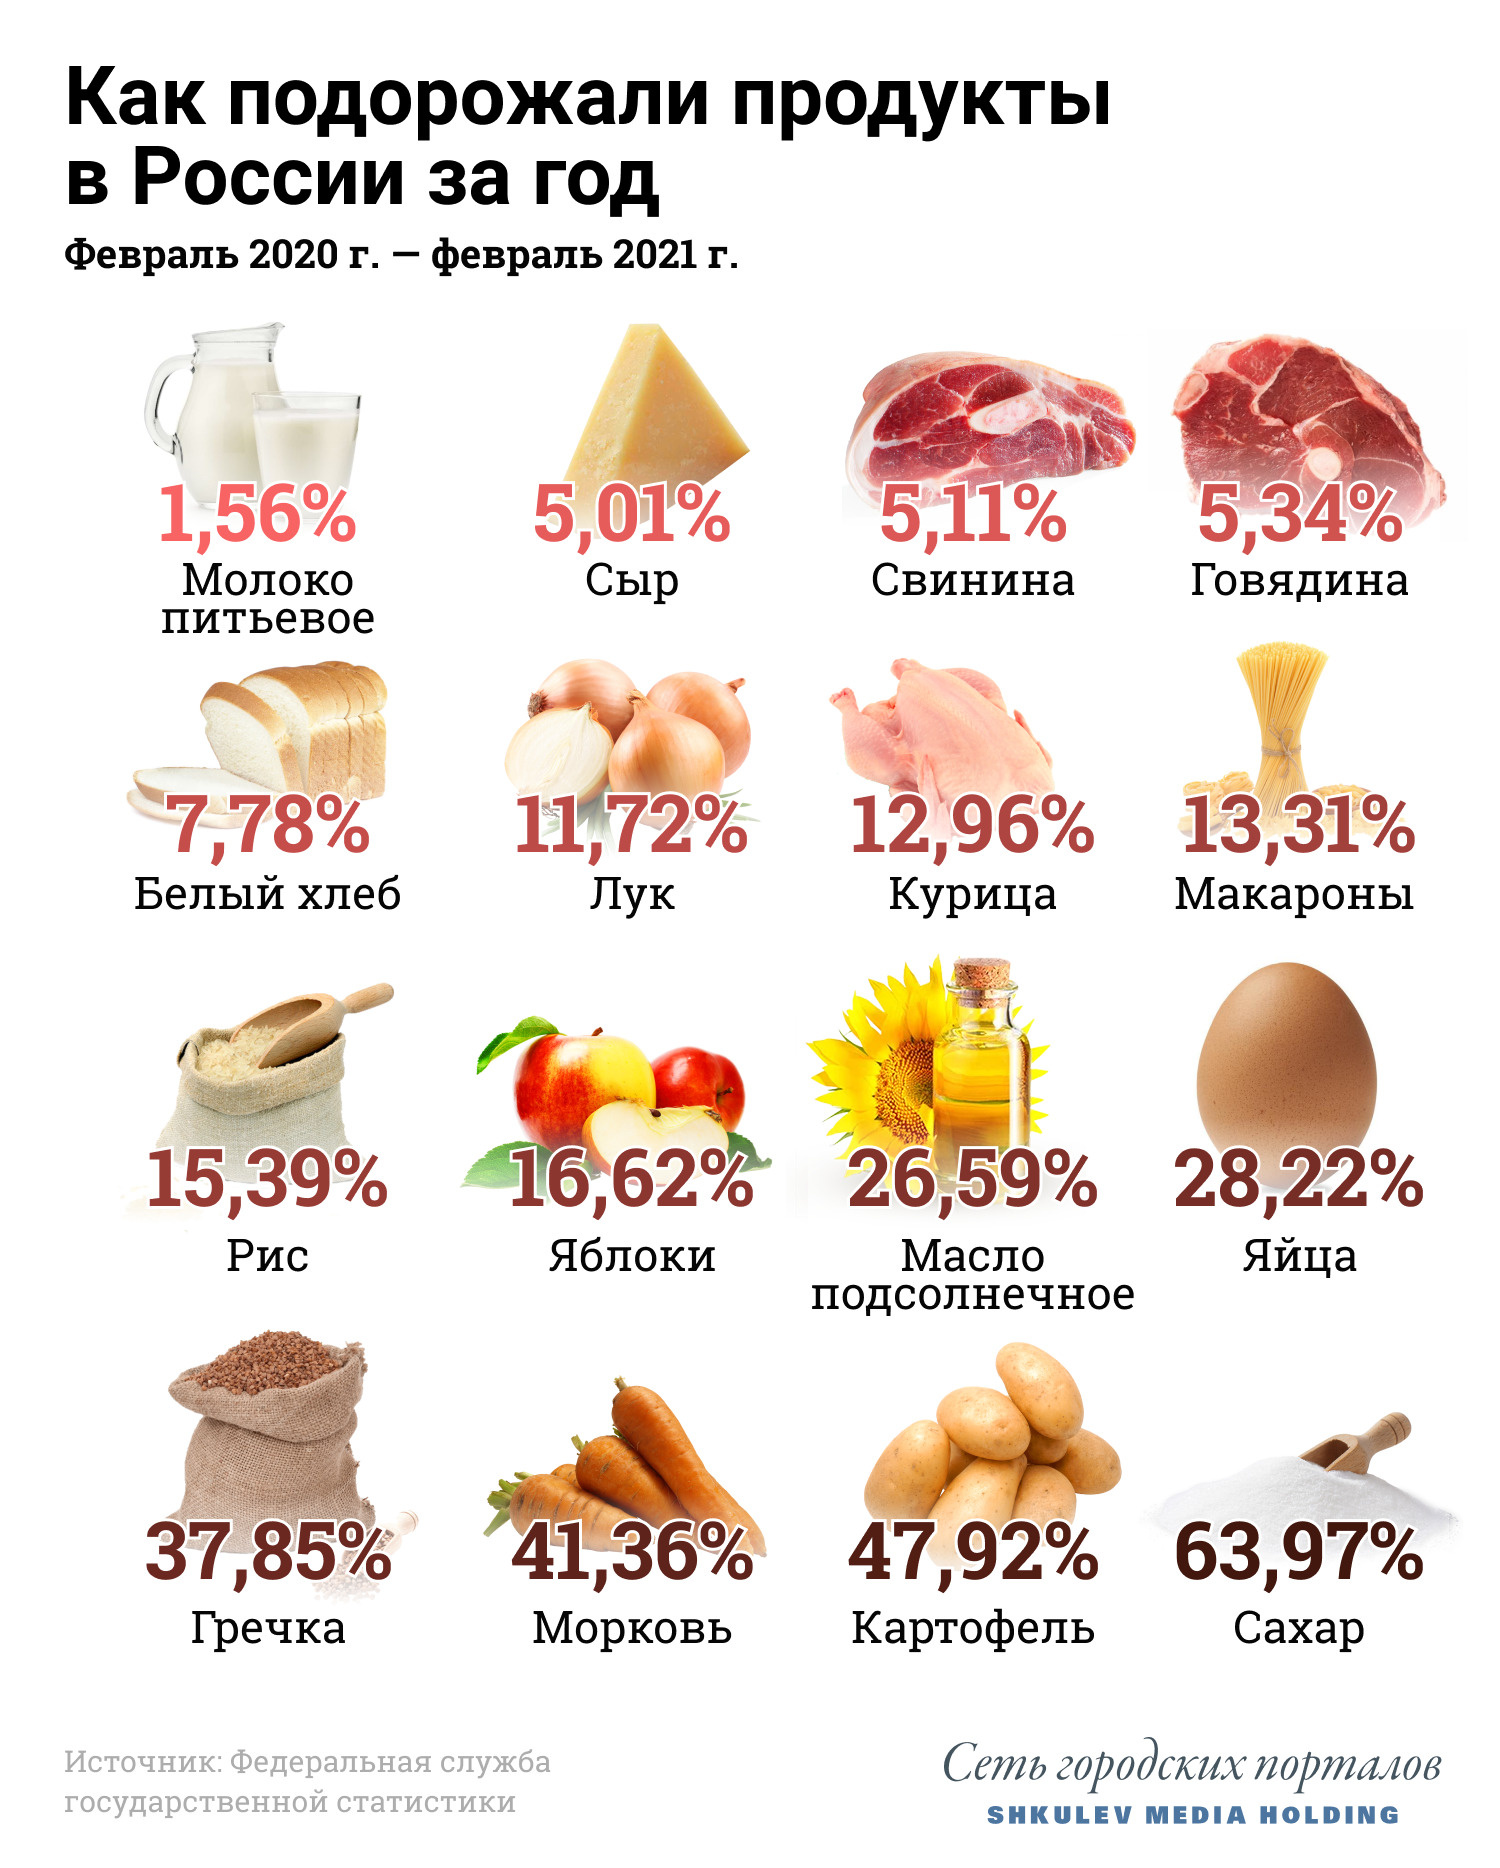 За год продукты в России подорожали в среднем на 7%